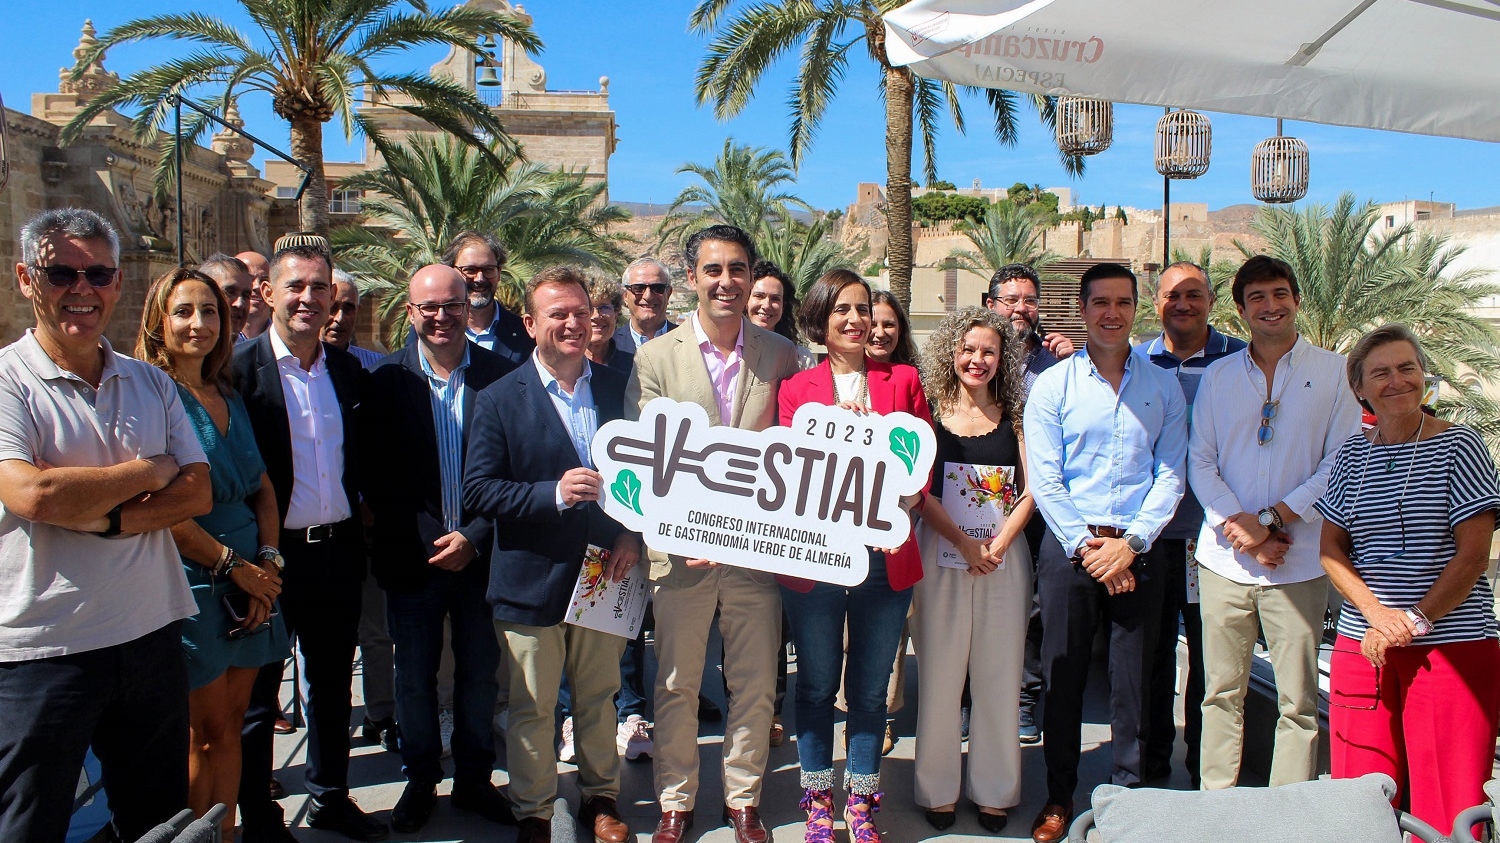 congreso vestial00007 uai - Turismo Almería